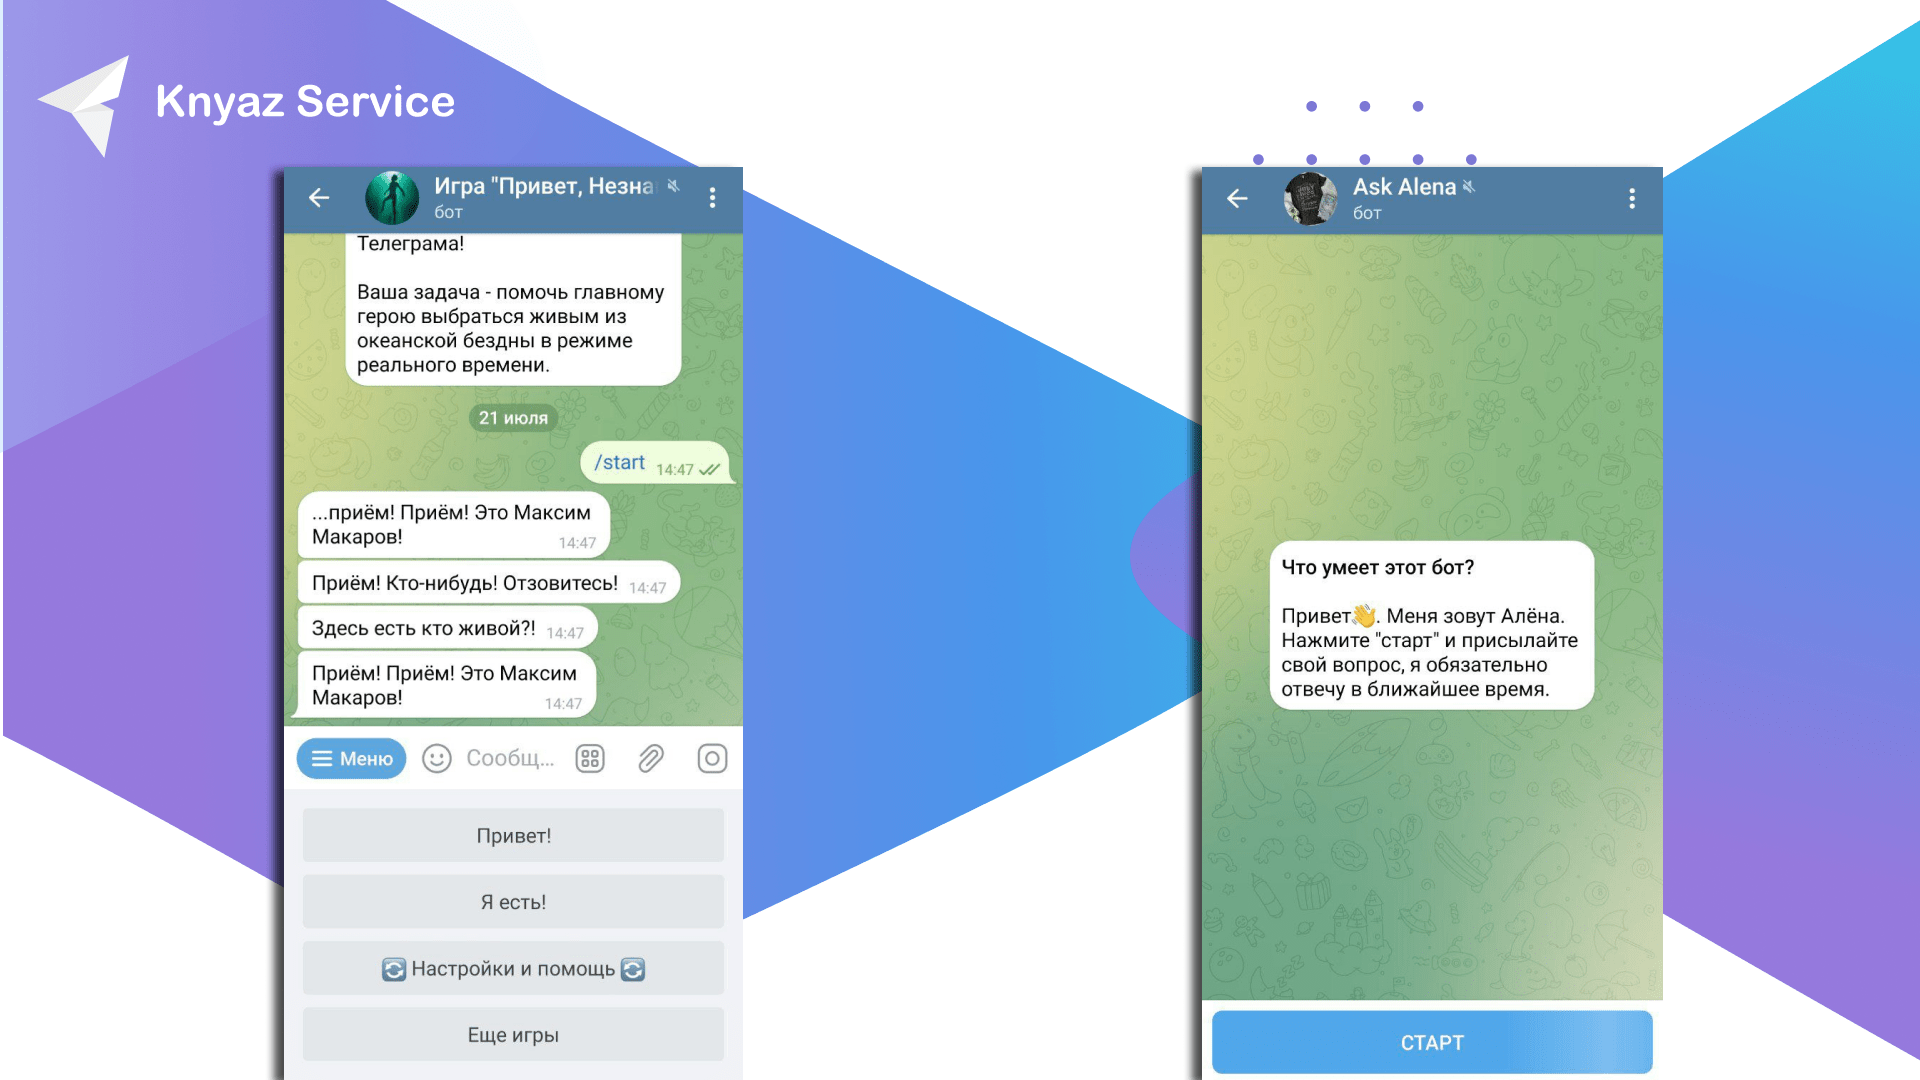 Инструкция по использованию ботов для общения в Telegram